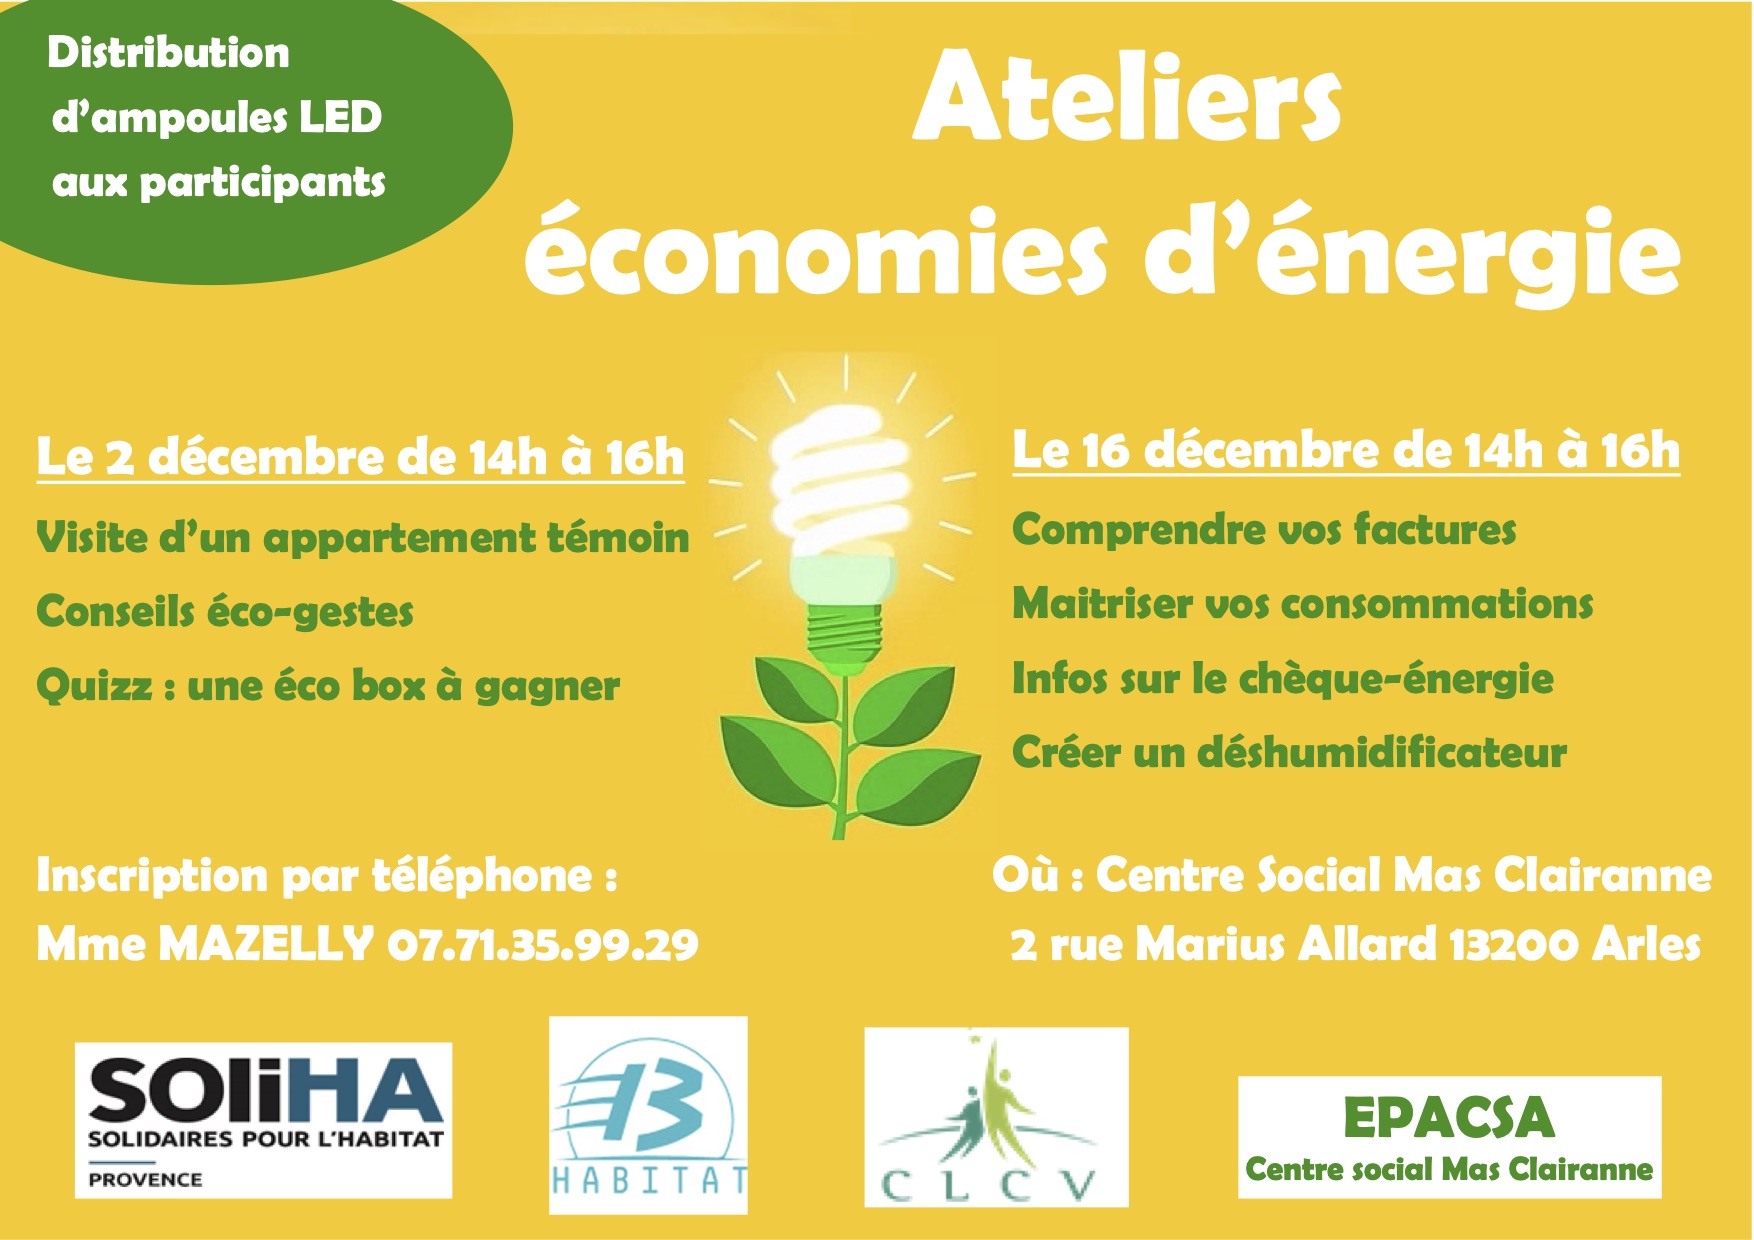 Ateliers économies d'énergie - Arles